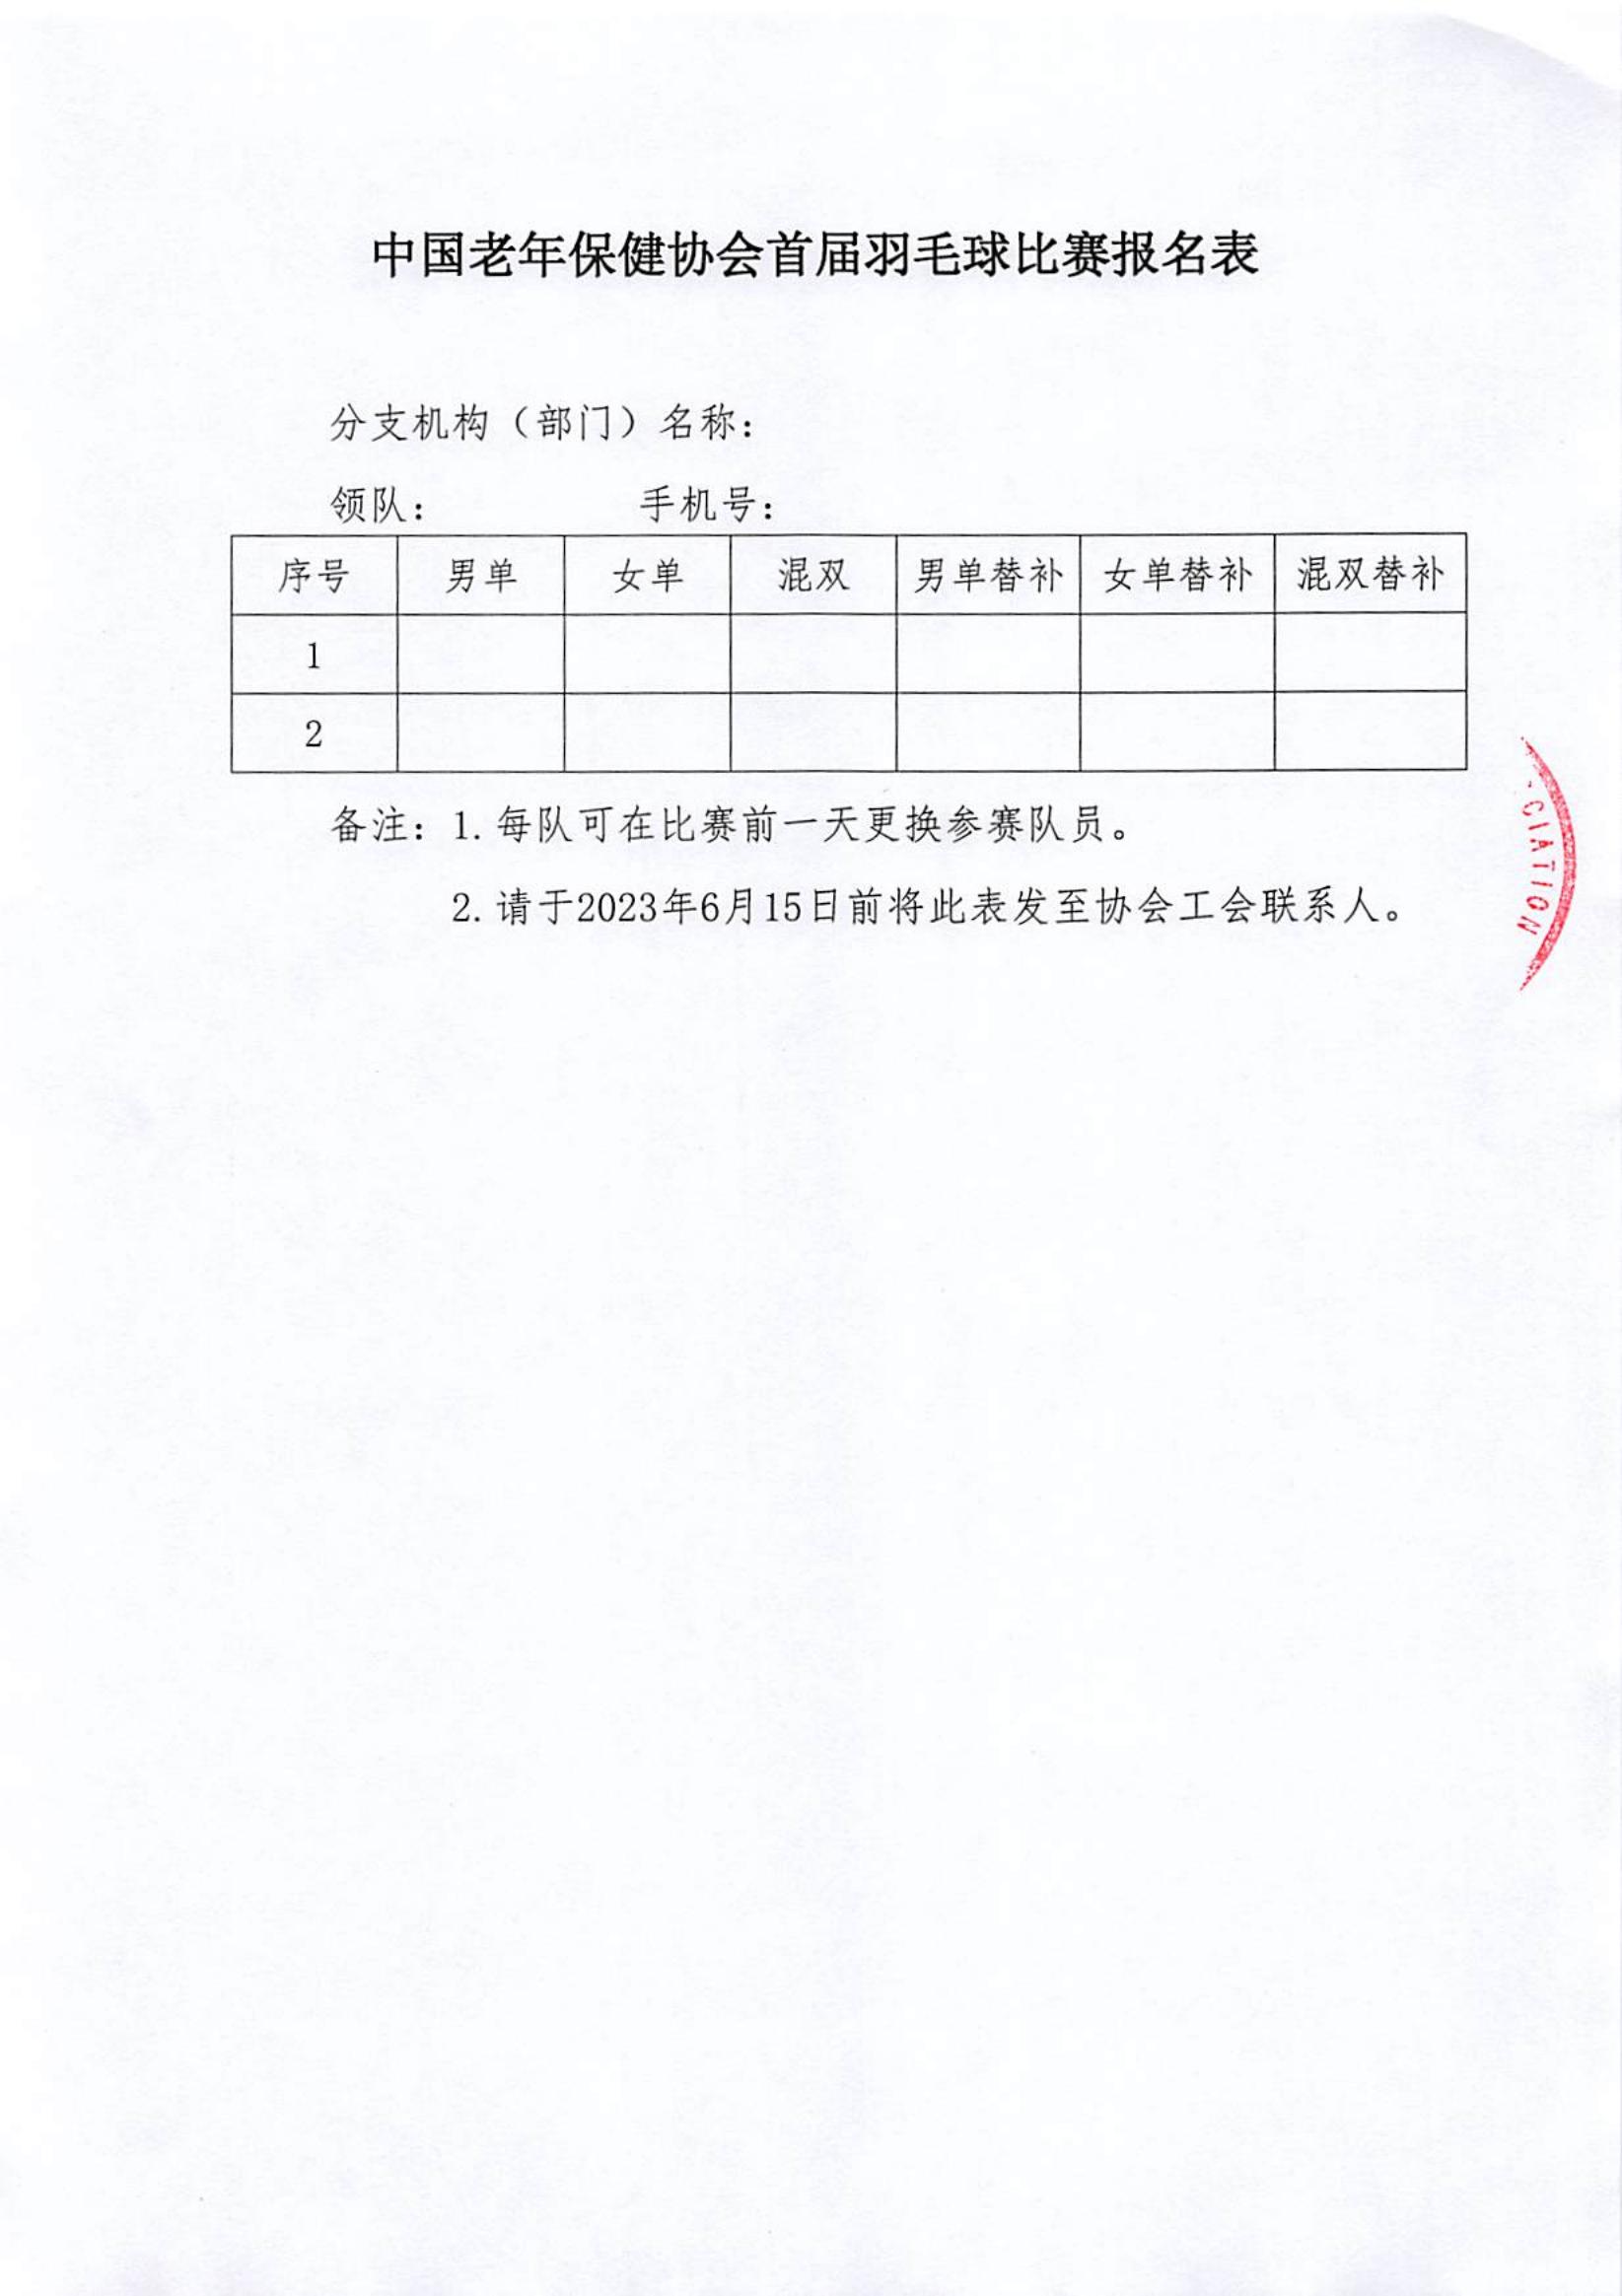 关于组织中国老年保健协会羽毛球比赛活动的通知_04.jpg